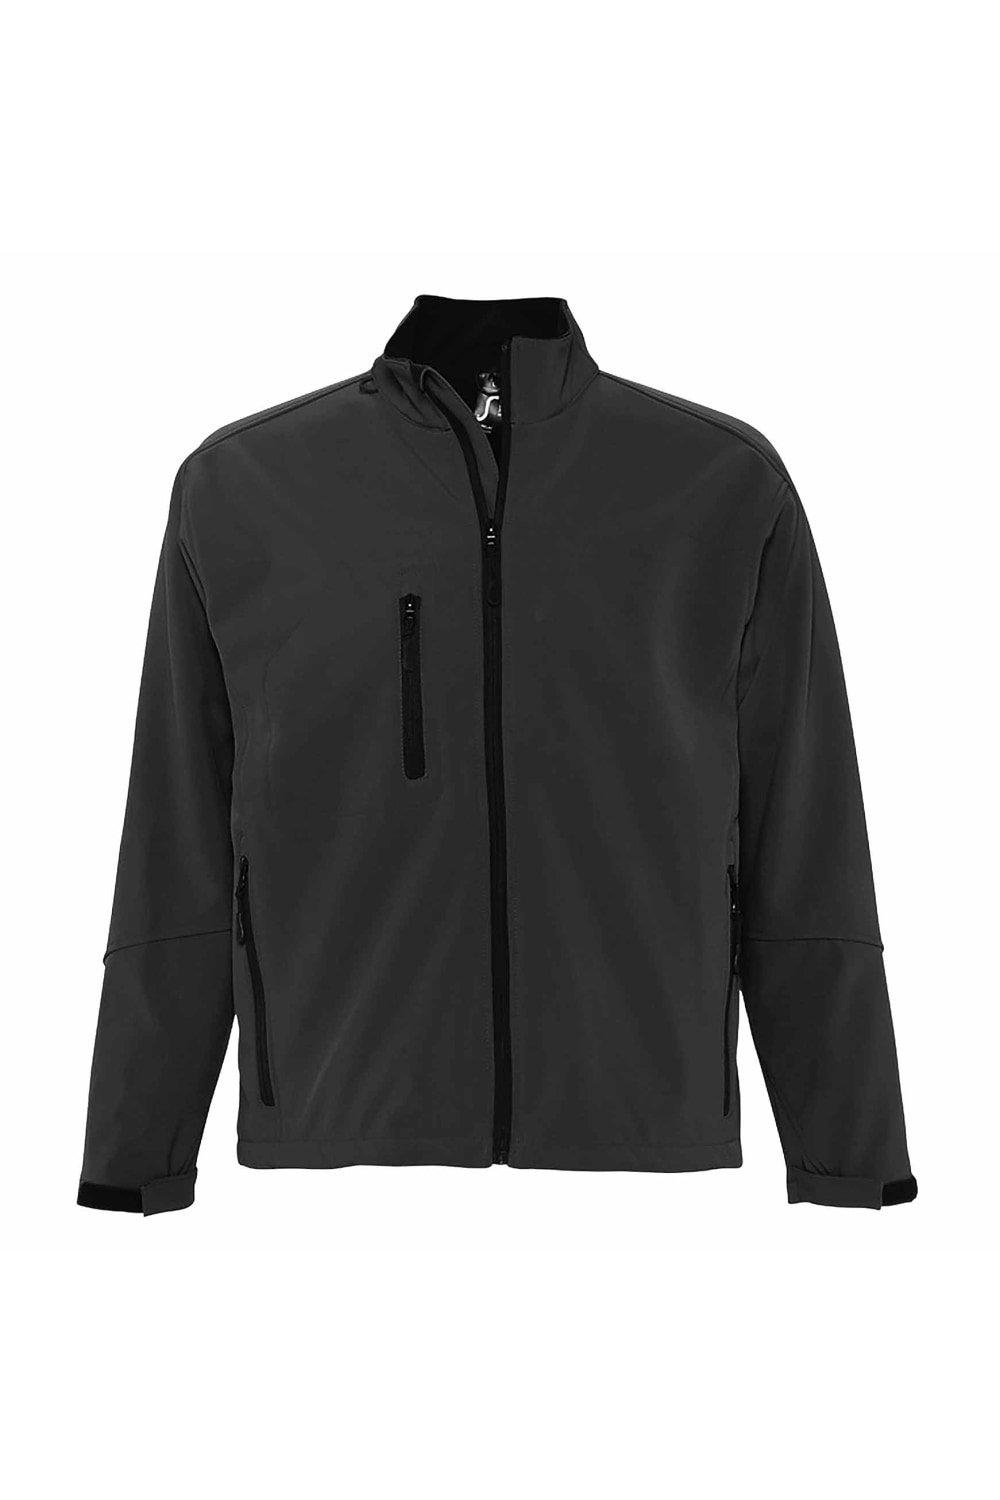 Куртка Relax Soft Shell (дышащая, ветрозащитная и водостойкая) SOL'S, серый